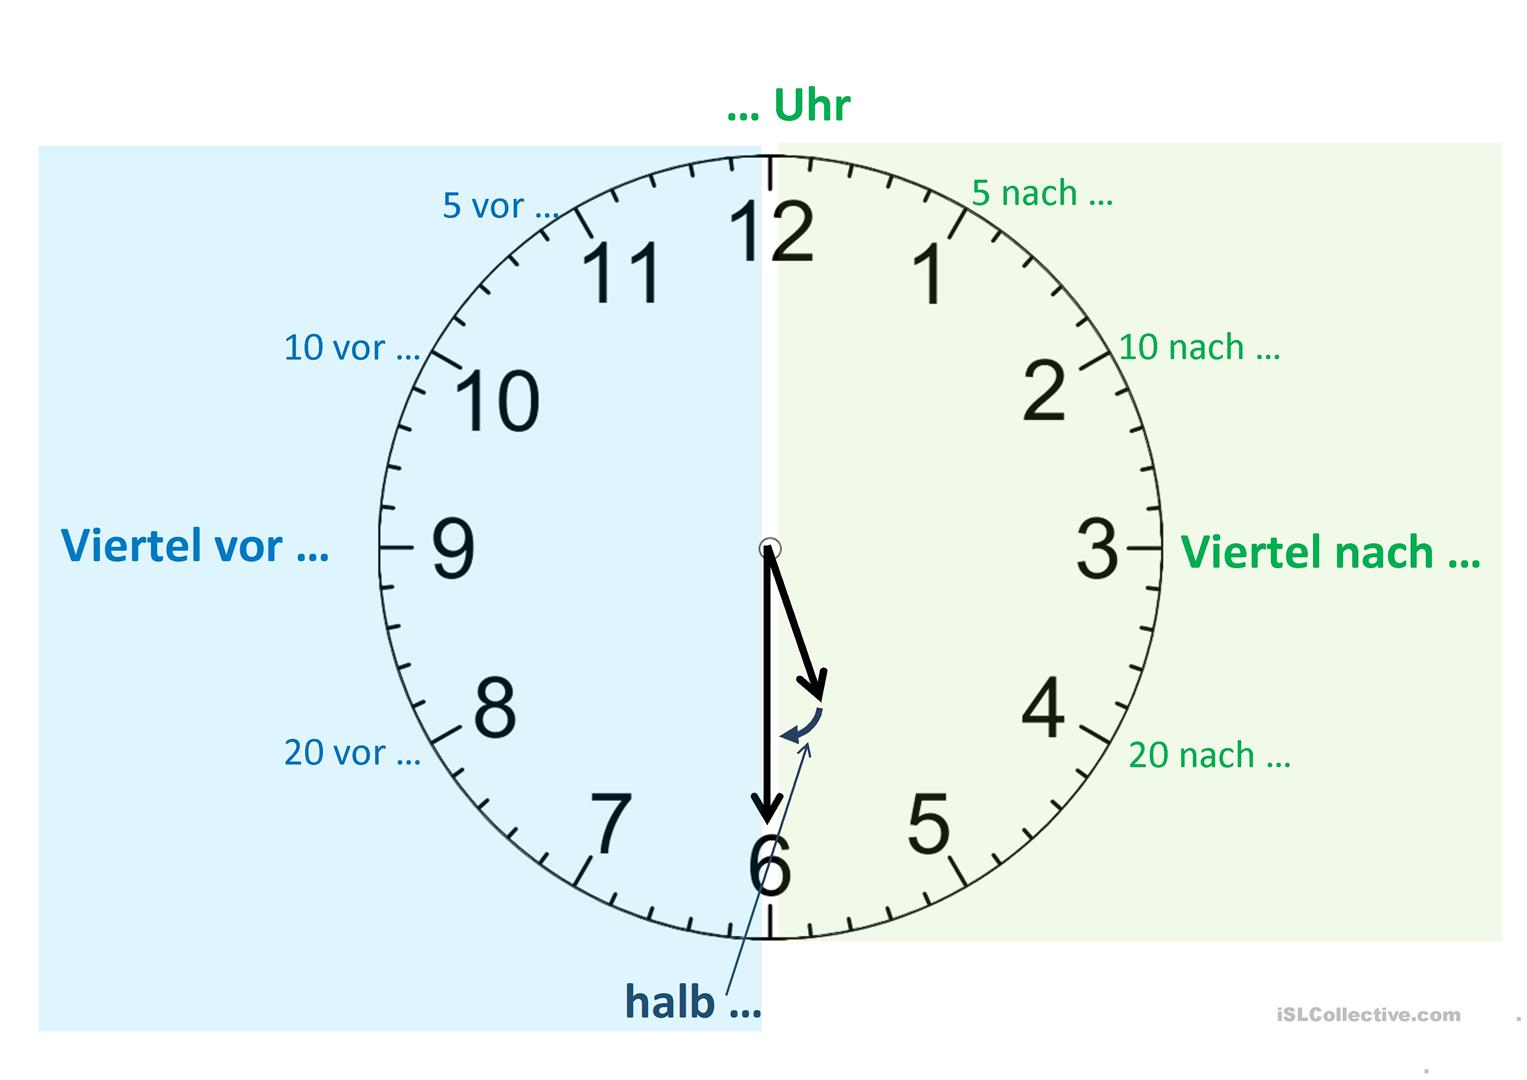 Es ist uhr. Циферблат на немецком языке. Часы по немецки. Часы по немецки циферблат. Часы в немецком языке.